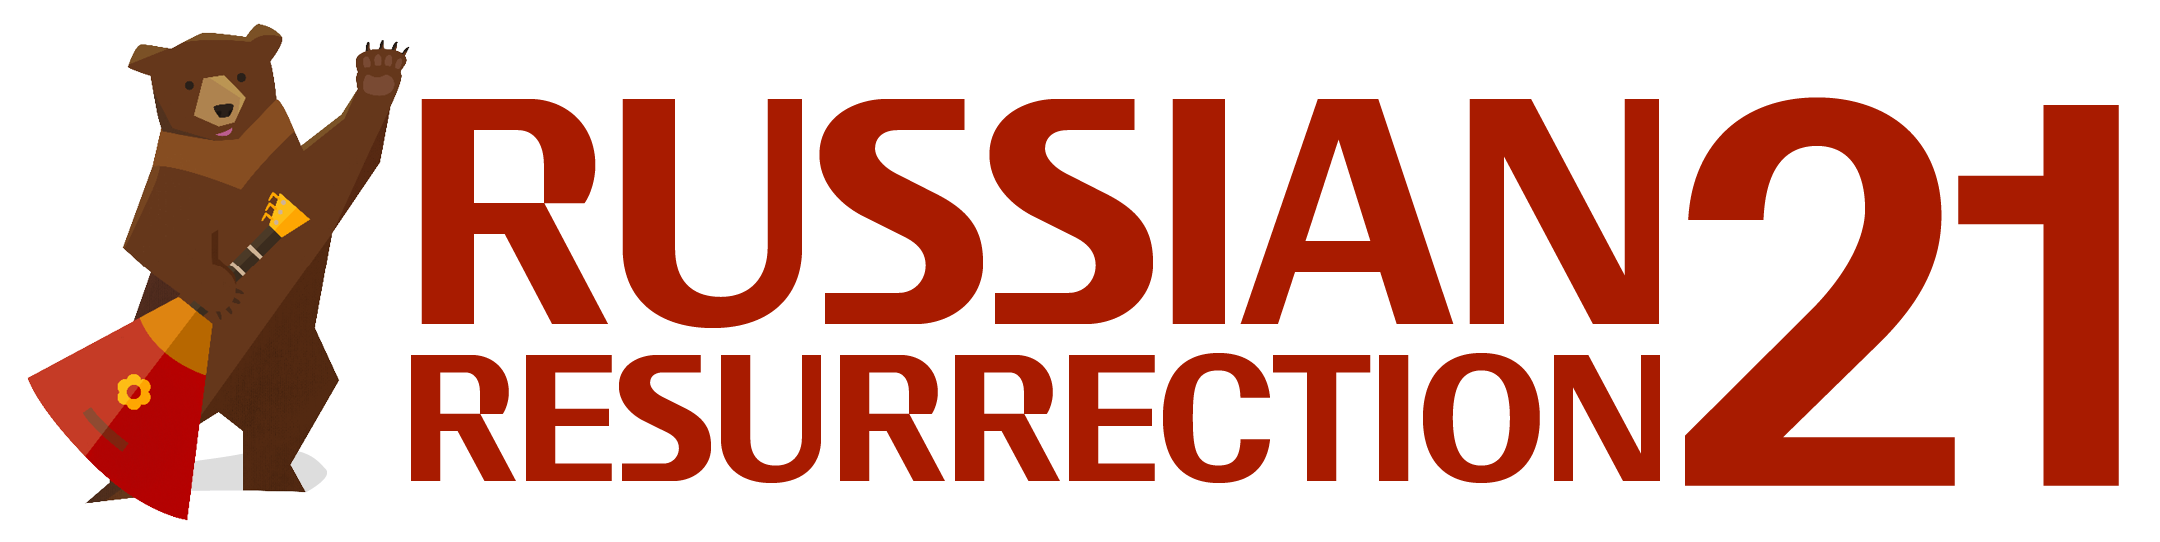 Russian Resurrection Mini Festival